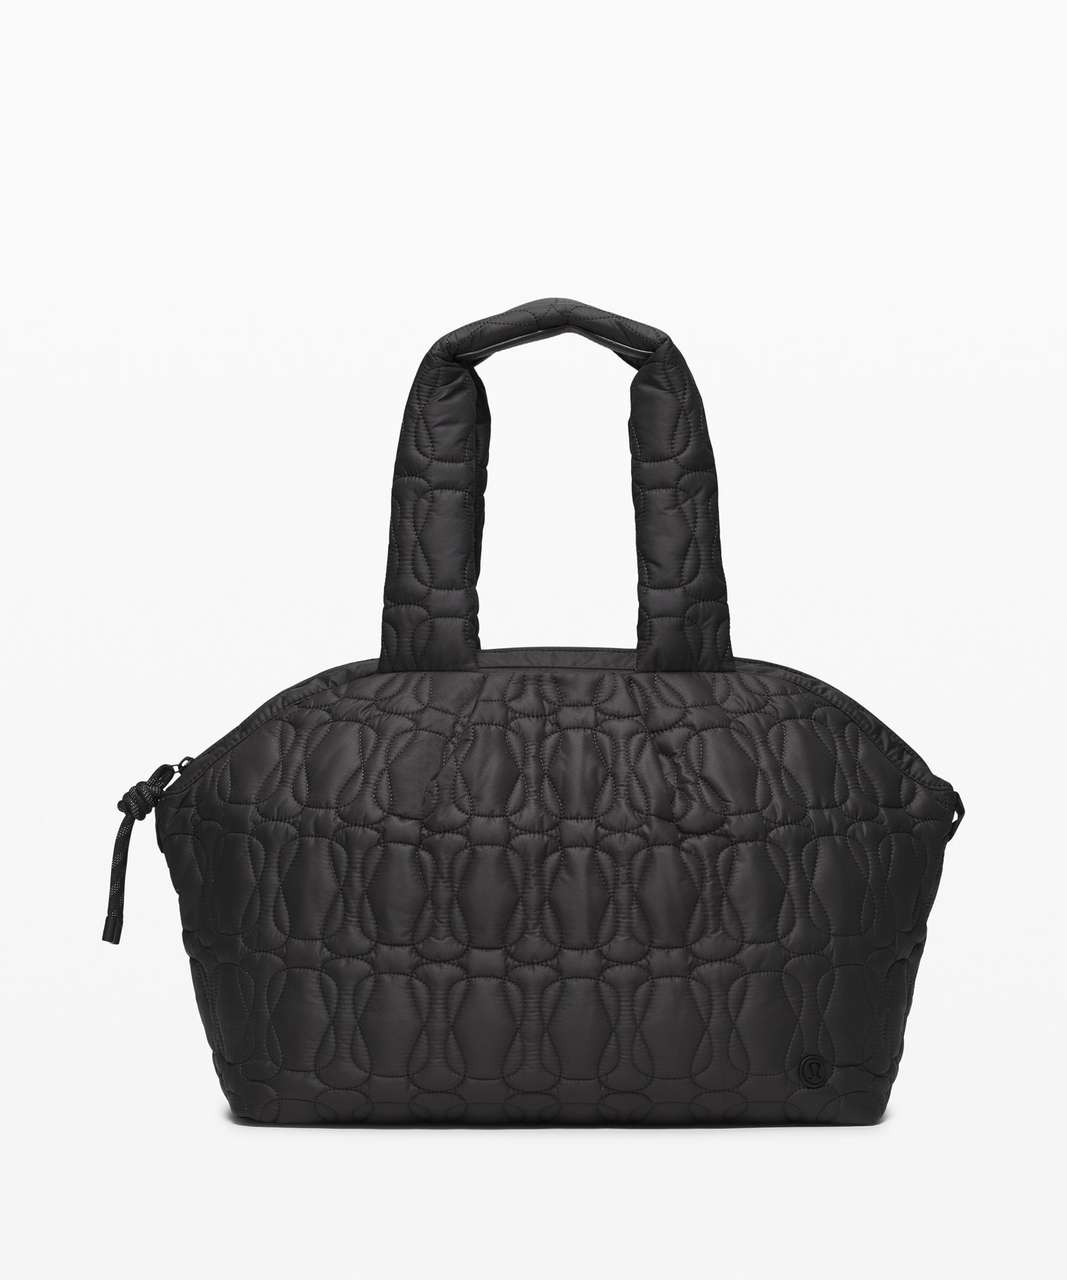 Lululemon Quilted Embrace Tote Bag 20L - Black